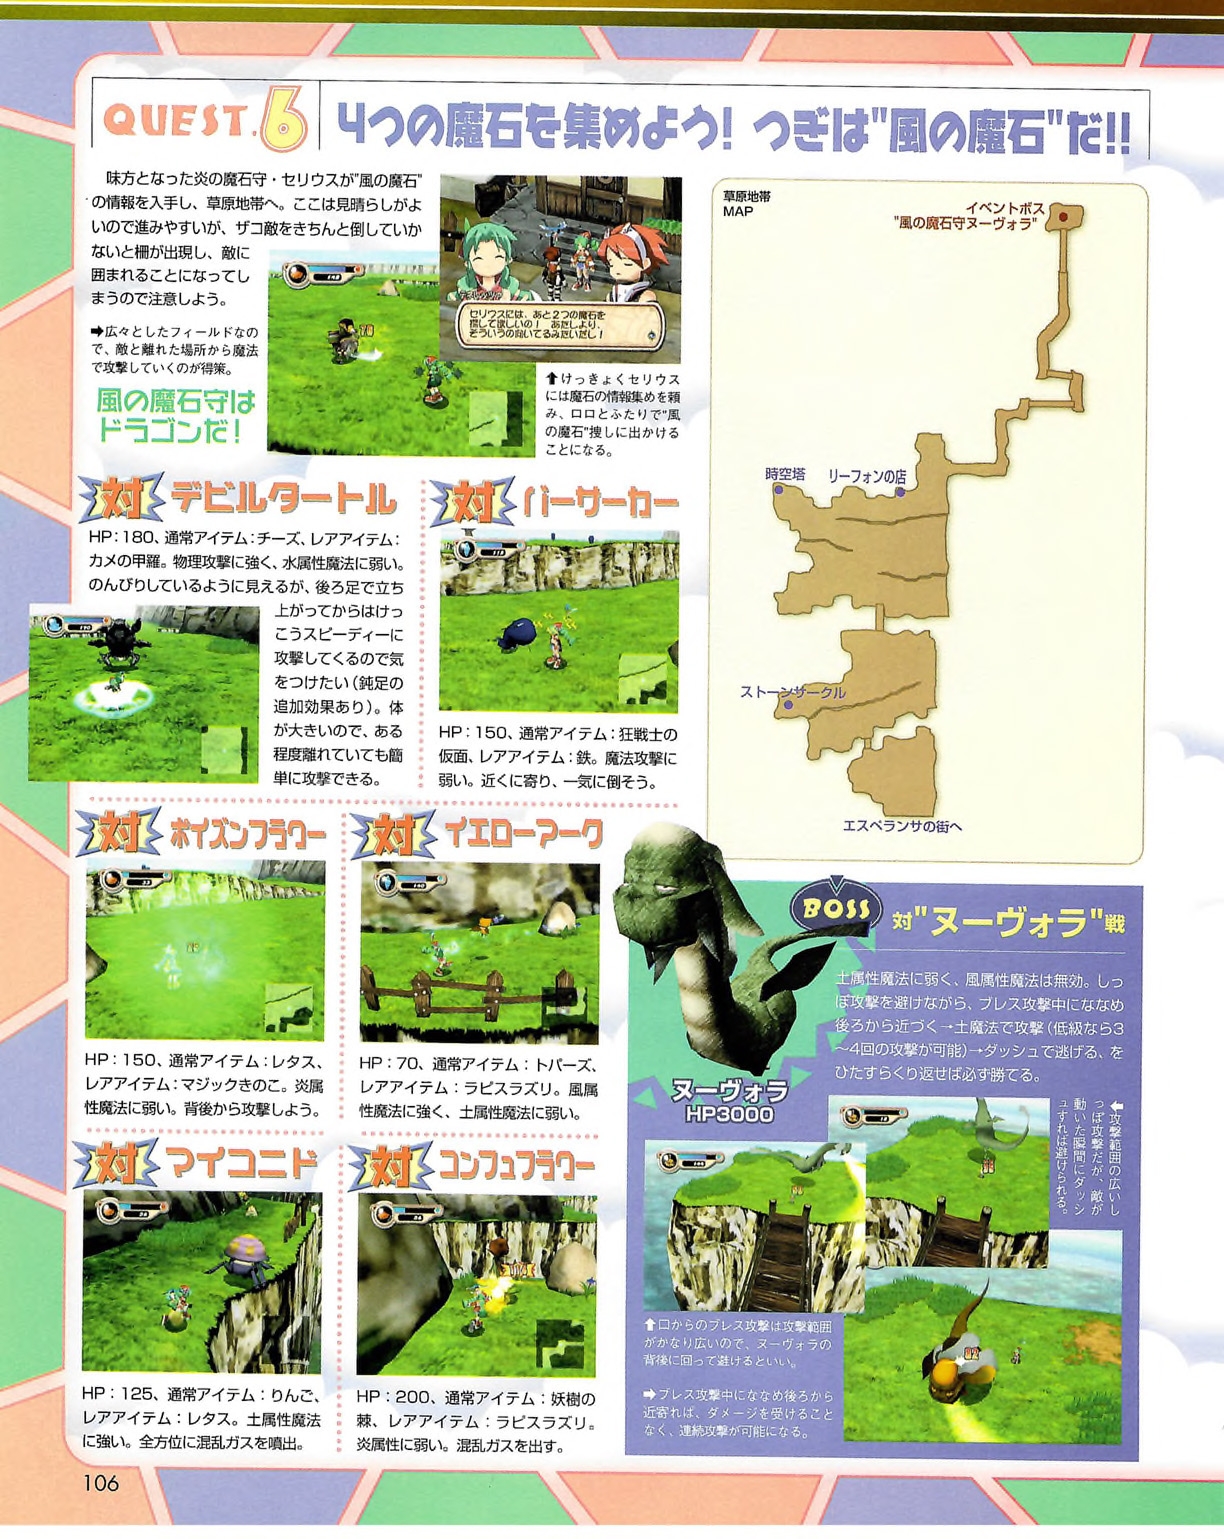 Famitsu_Xbox_2003-04_jp2 105